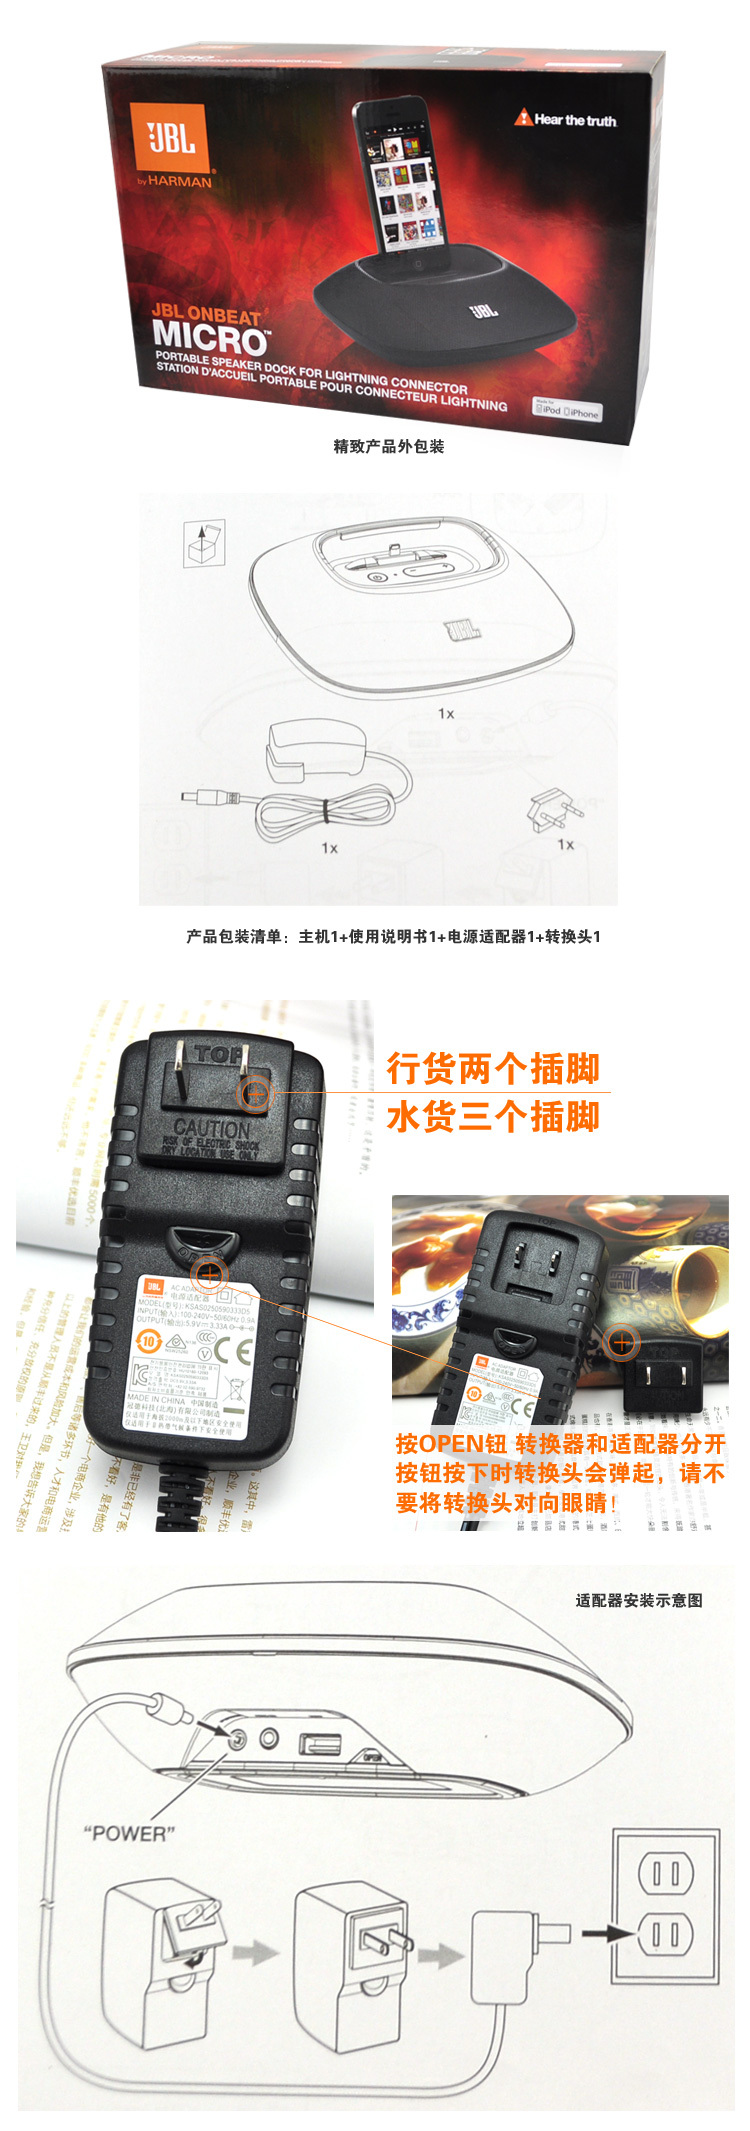 新品JBL OnBeat Micro 700元_郑州向阳数码(全